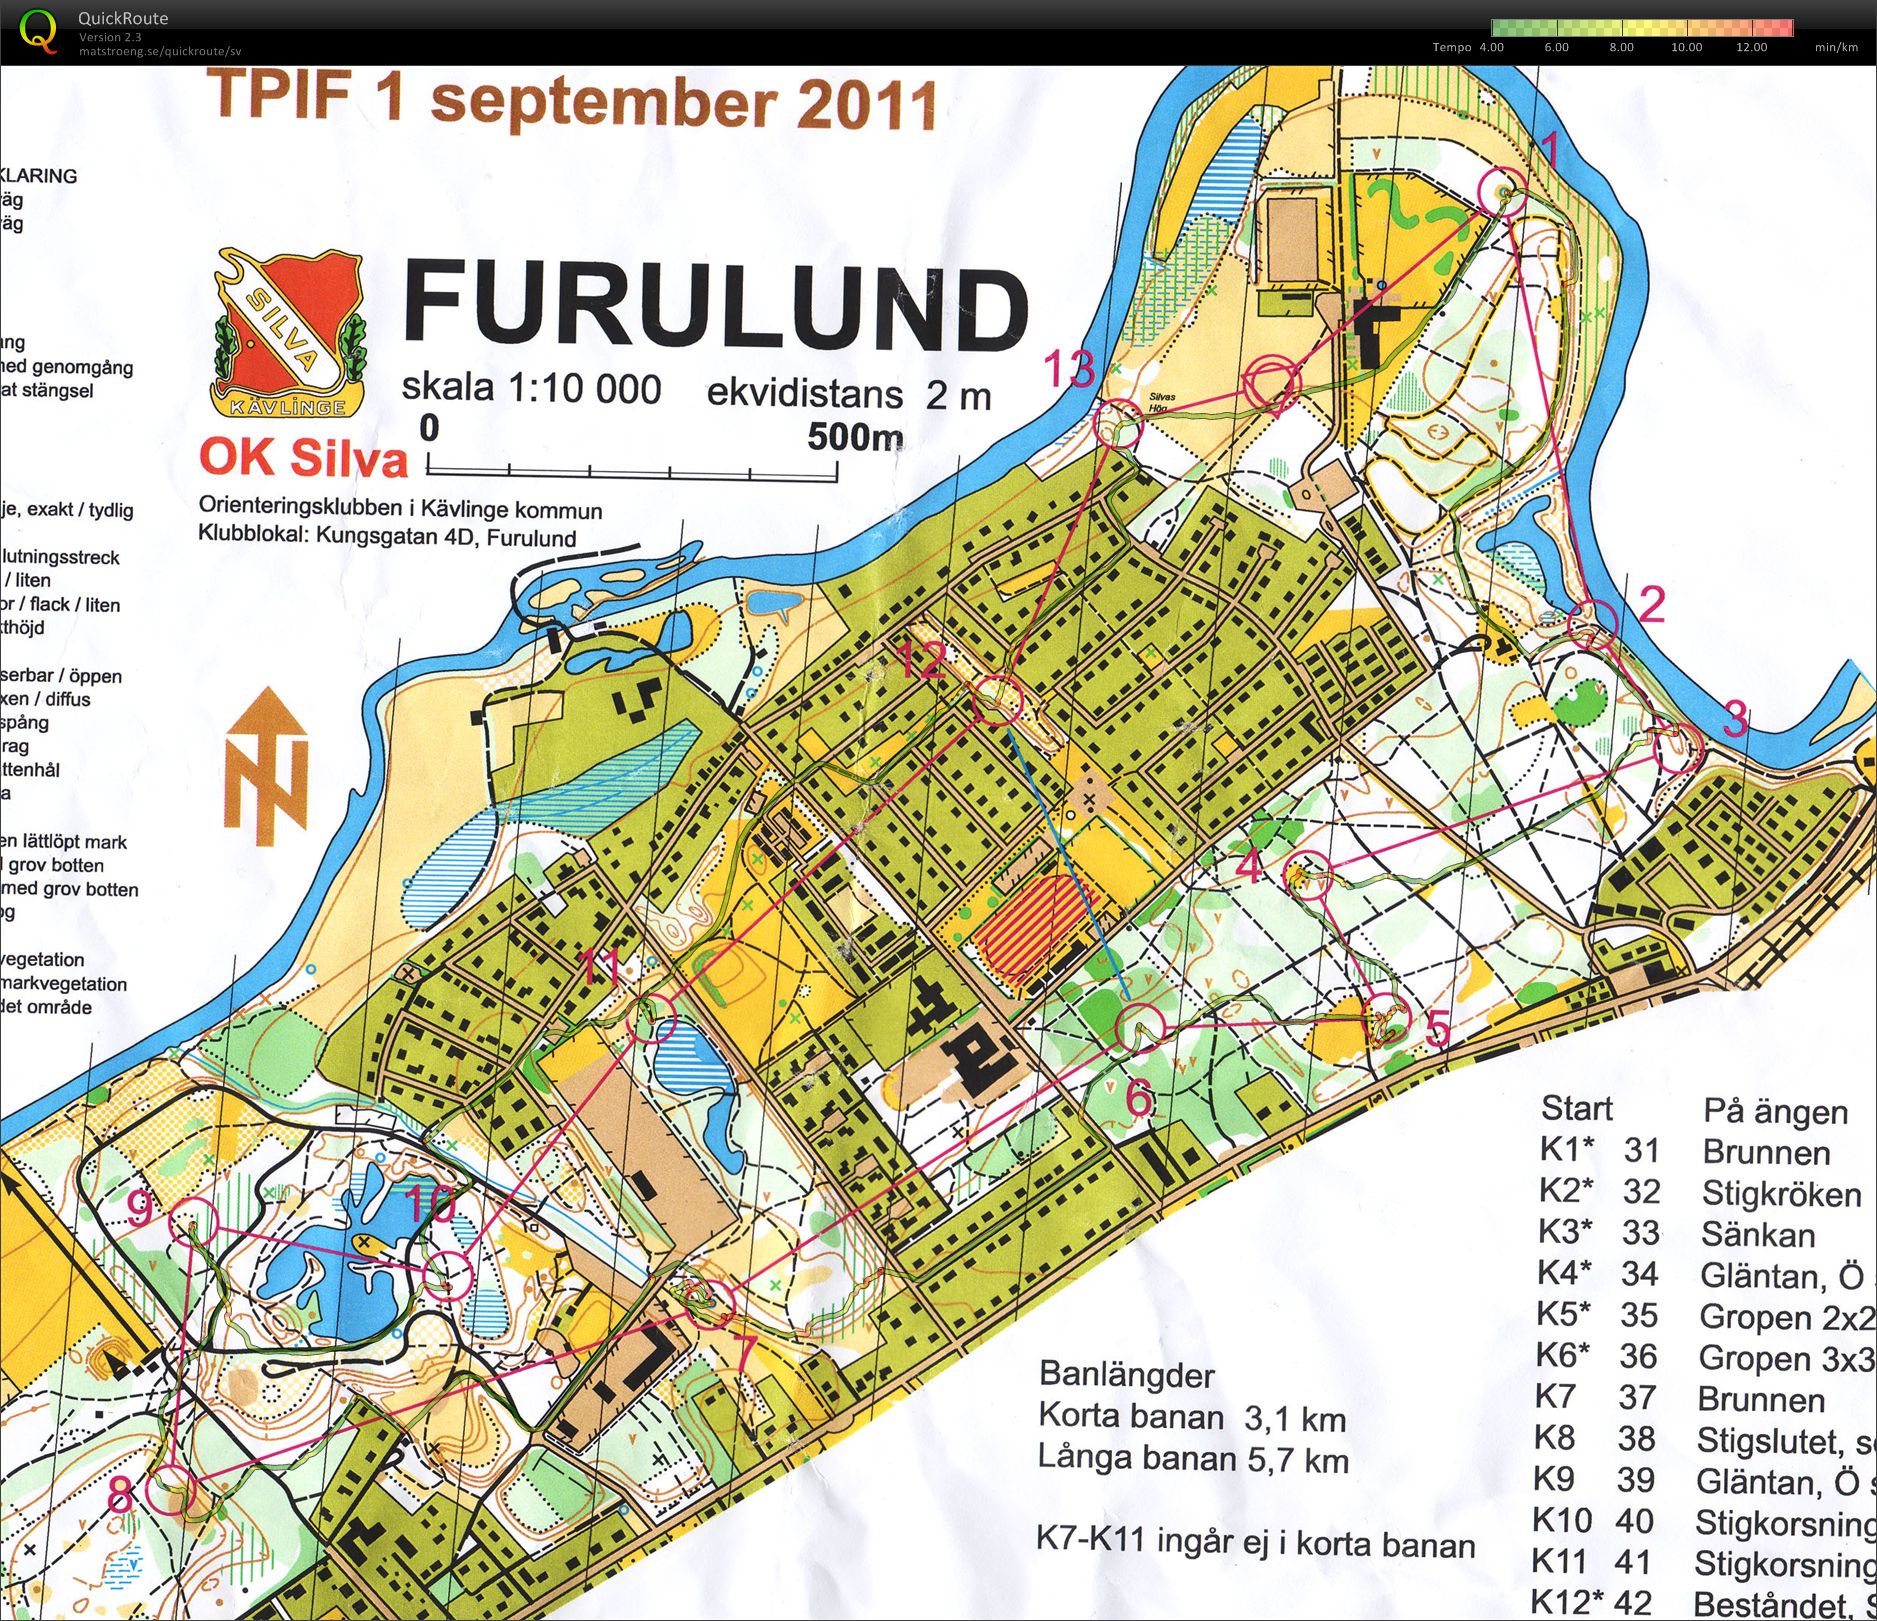 TetraPak OL Furulund (2011-08-31)